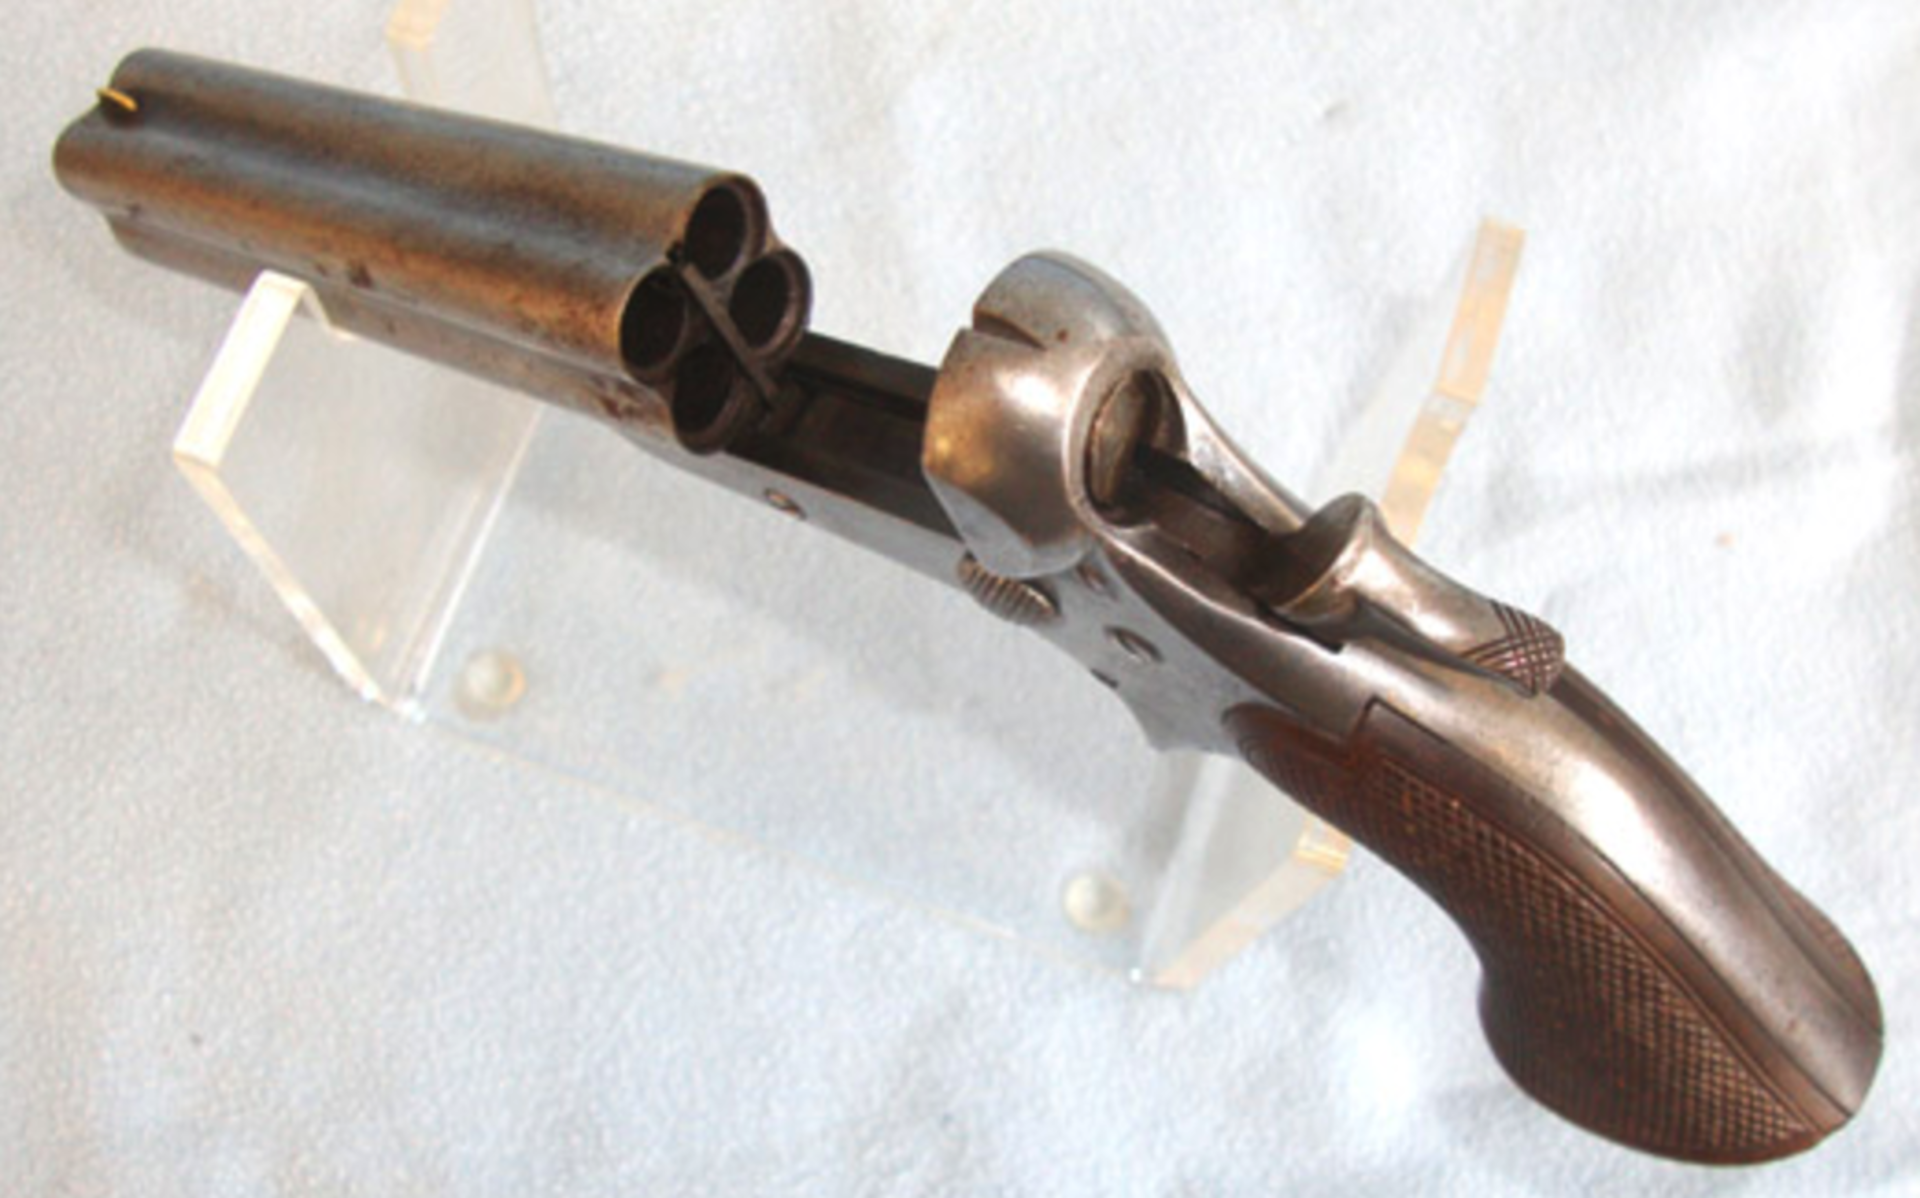 Large,1859-1874 American Wild West Era Sharps 1859 .30 Rim Fire Calibre 4 Barrelled Pocket Derringer - Image 2 of 3